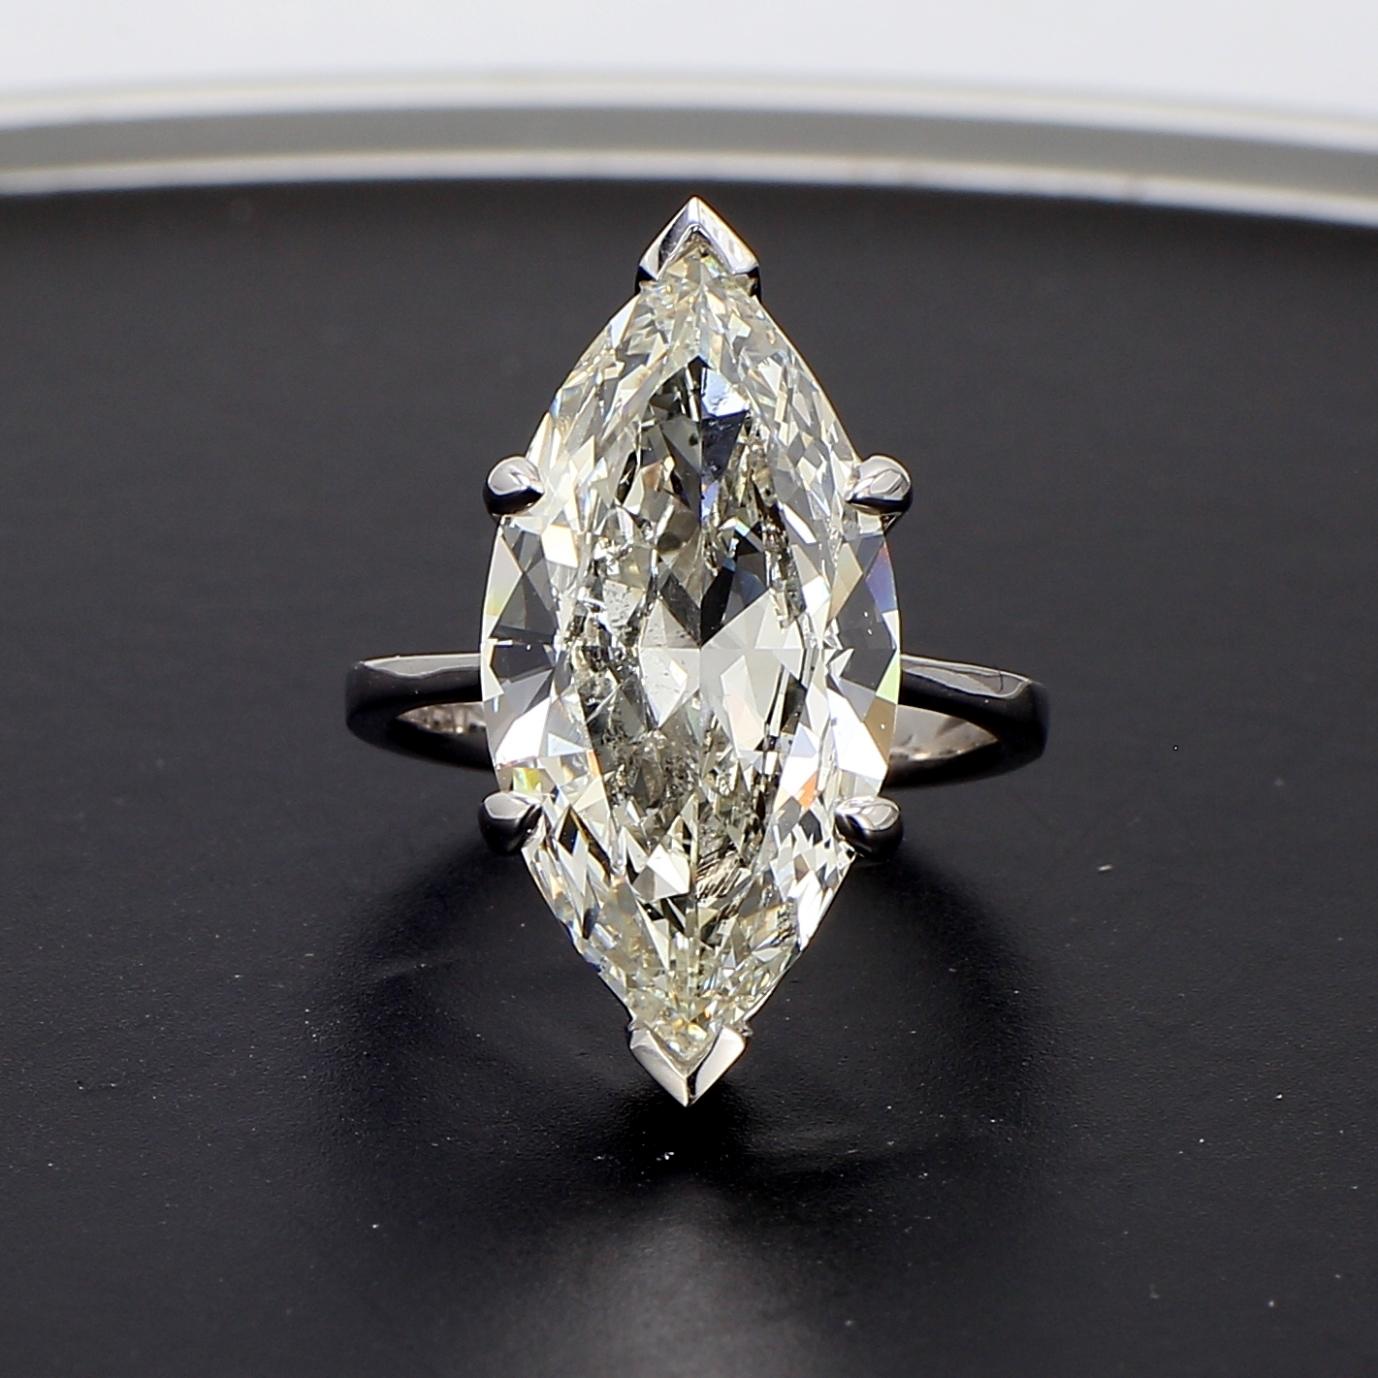 Es wird angenommen, dass der marquiseförmige Diamant von König Ludwig X1V. von Frankreich in Auftrag gegeben wurde. Die Legende berichtet, dass der König einen Stein verlangte, der ihn an den perfekt geformten Mund und das Lächeln seiner wahren